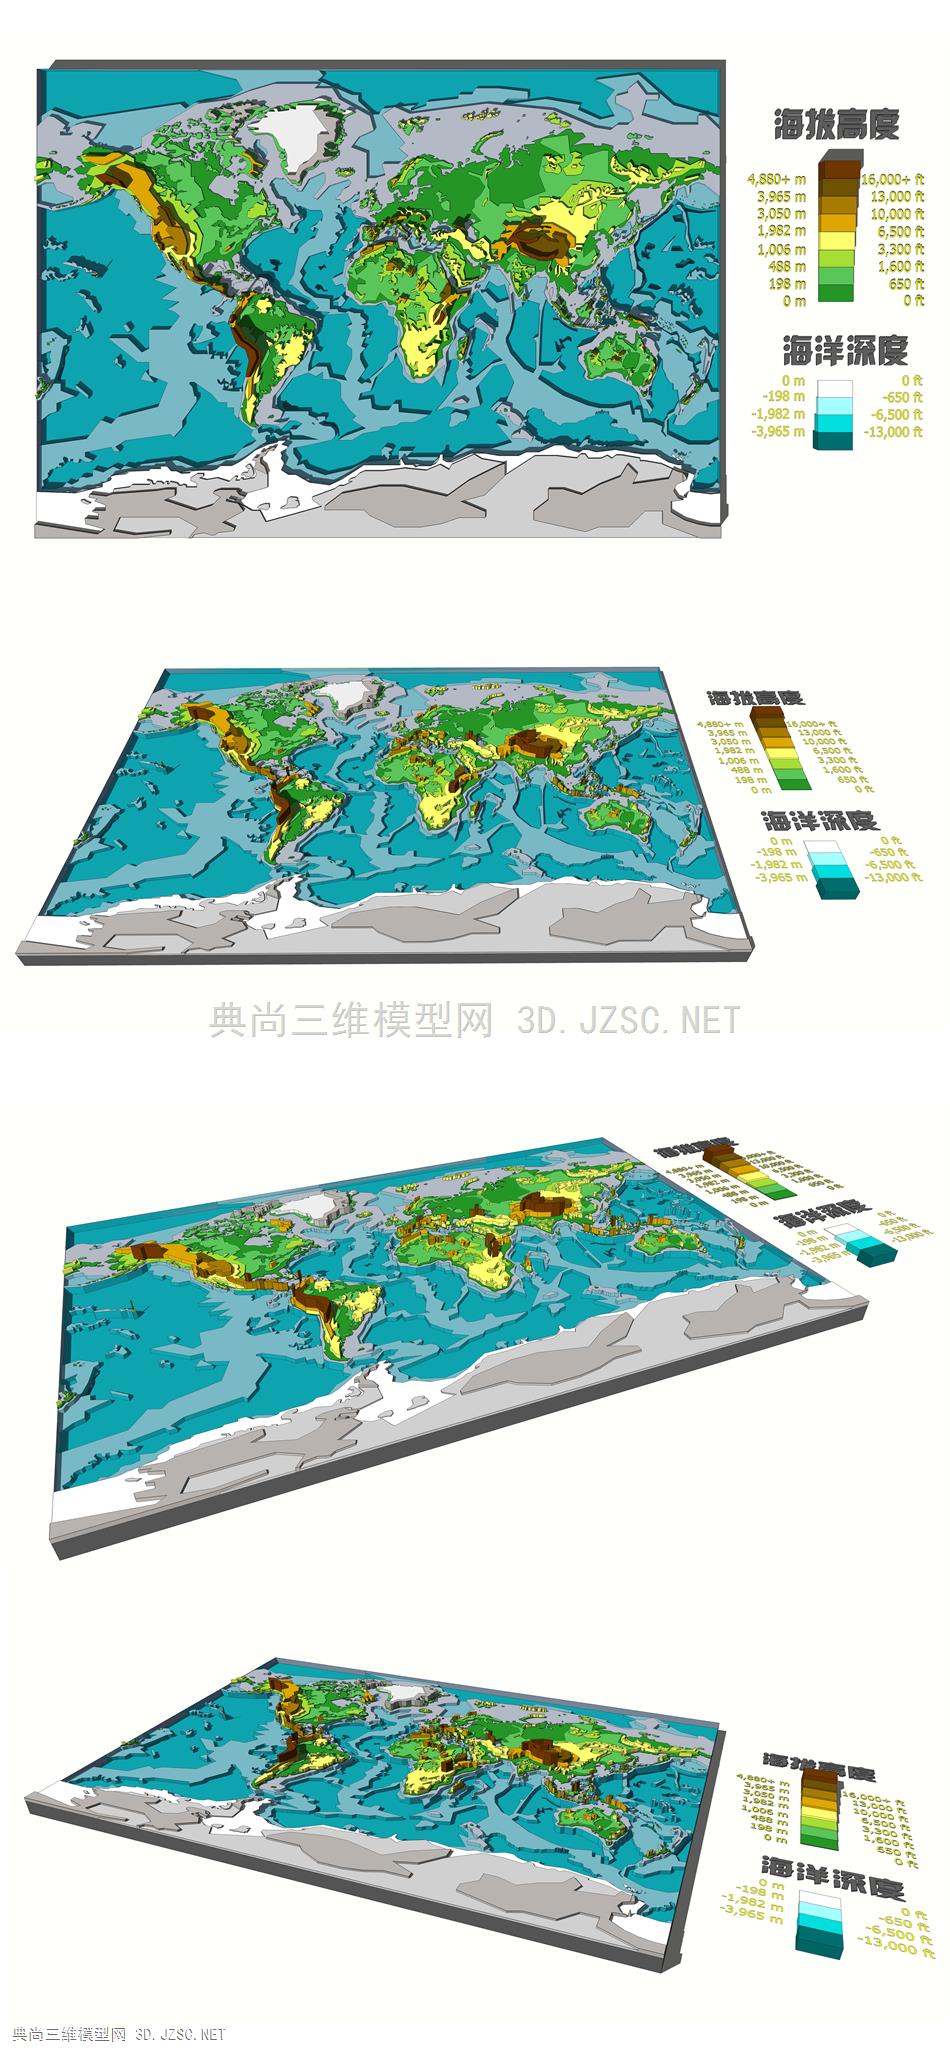 世界地图挂件 等高线地形地图 装饰地图挂件 展示地形模型